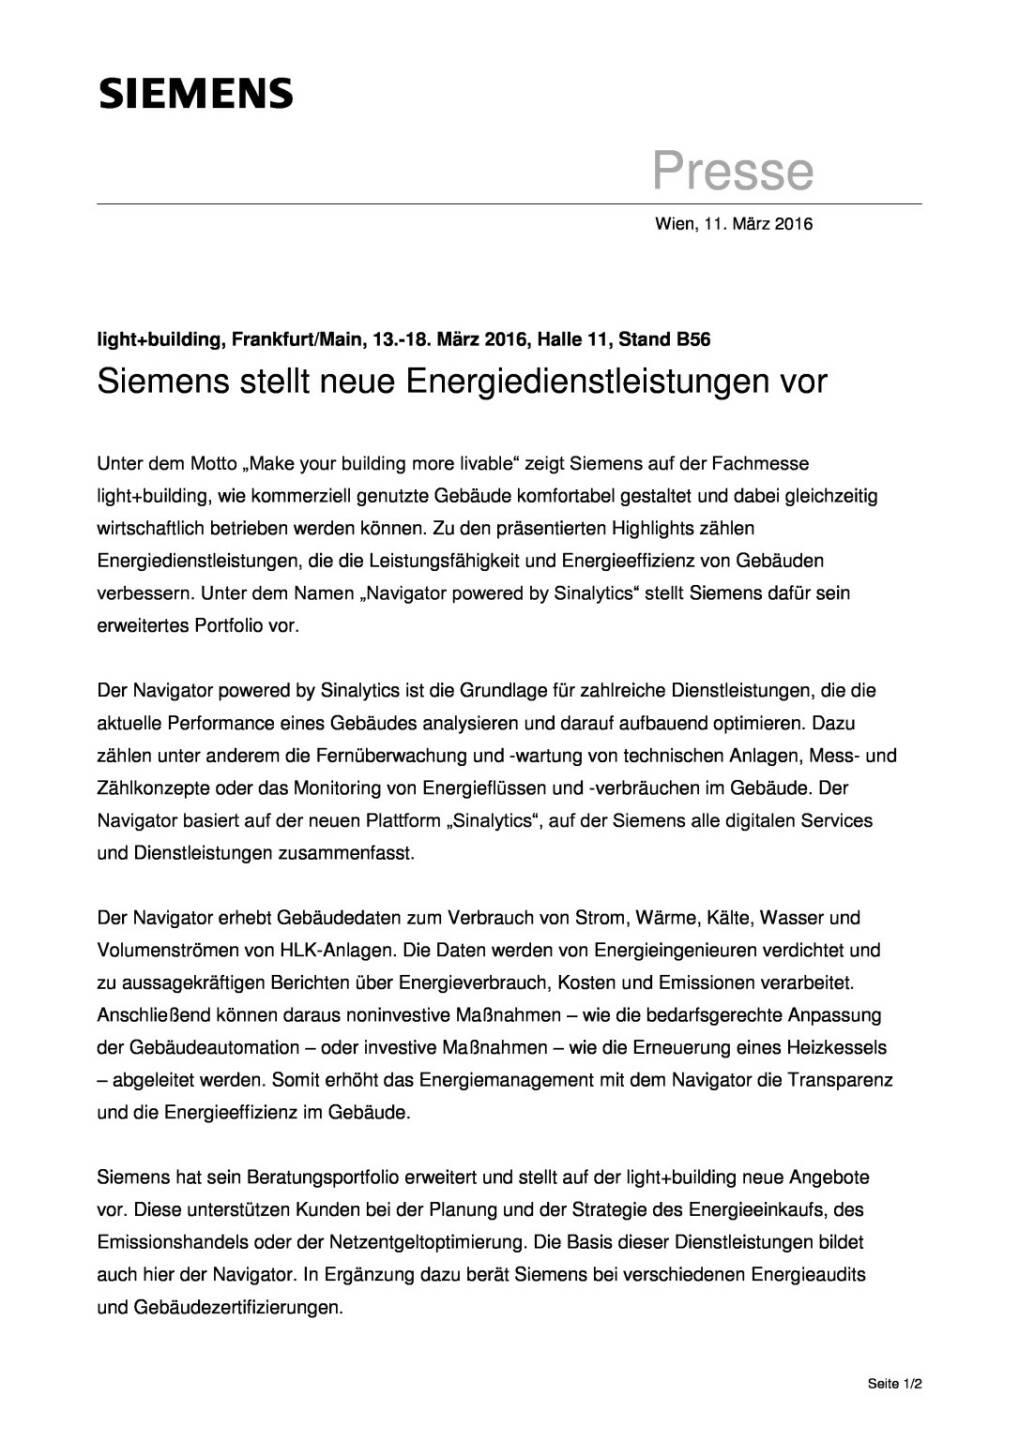 Siemens stellt neue Energiedienstleistungen vor, Seite 1/2, komplettes Dokument unter http://boerse-social.com/static/uploads/file_772_siemens_stellt_neue_energiedienstleistungen_vor.pdf